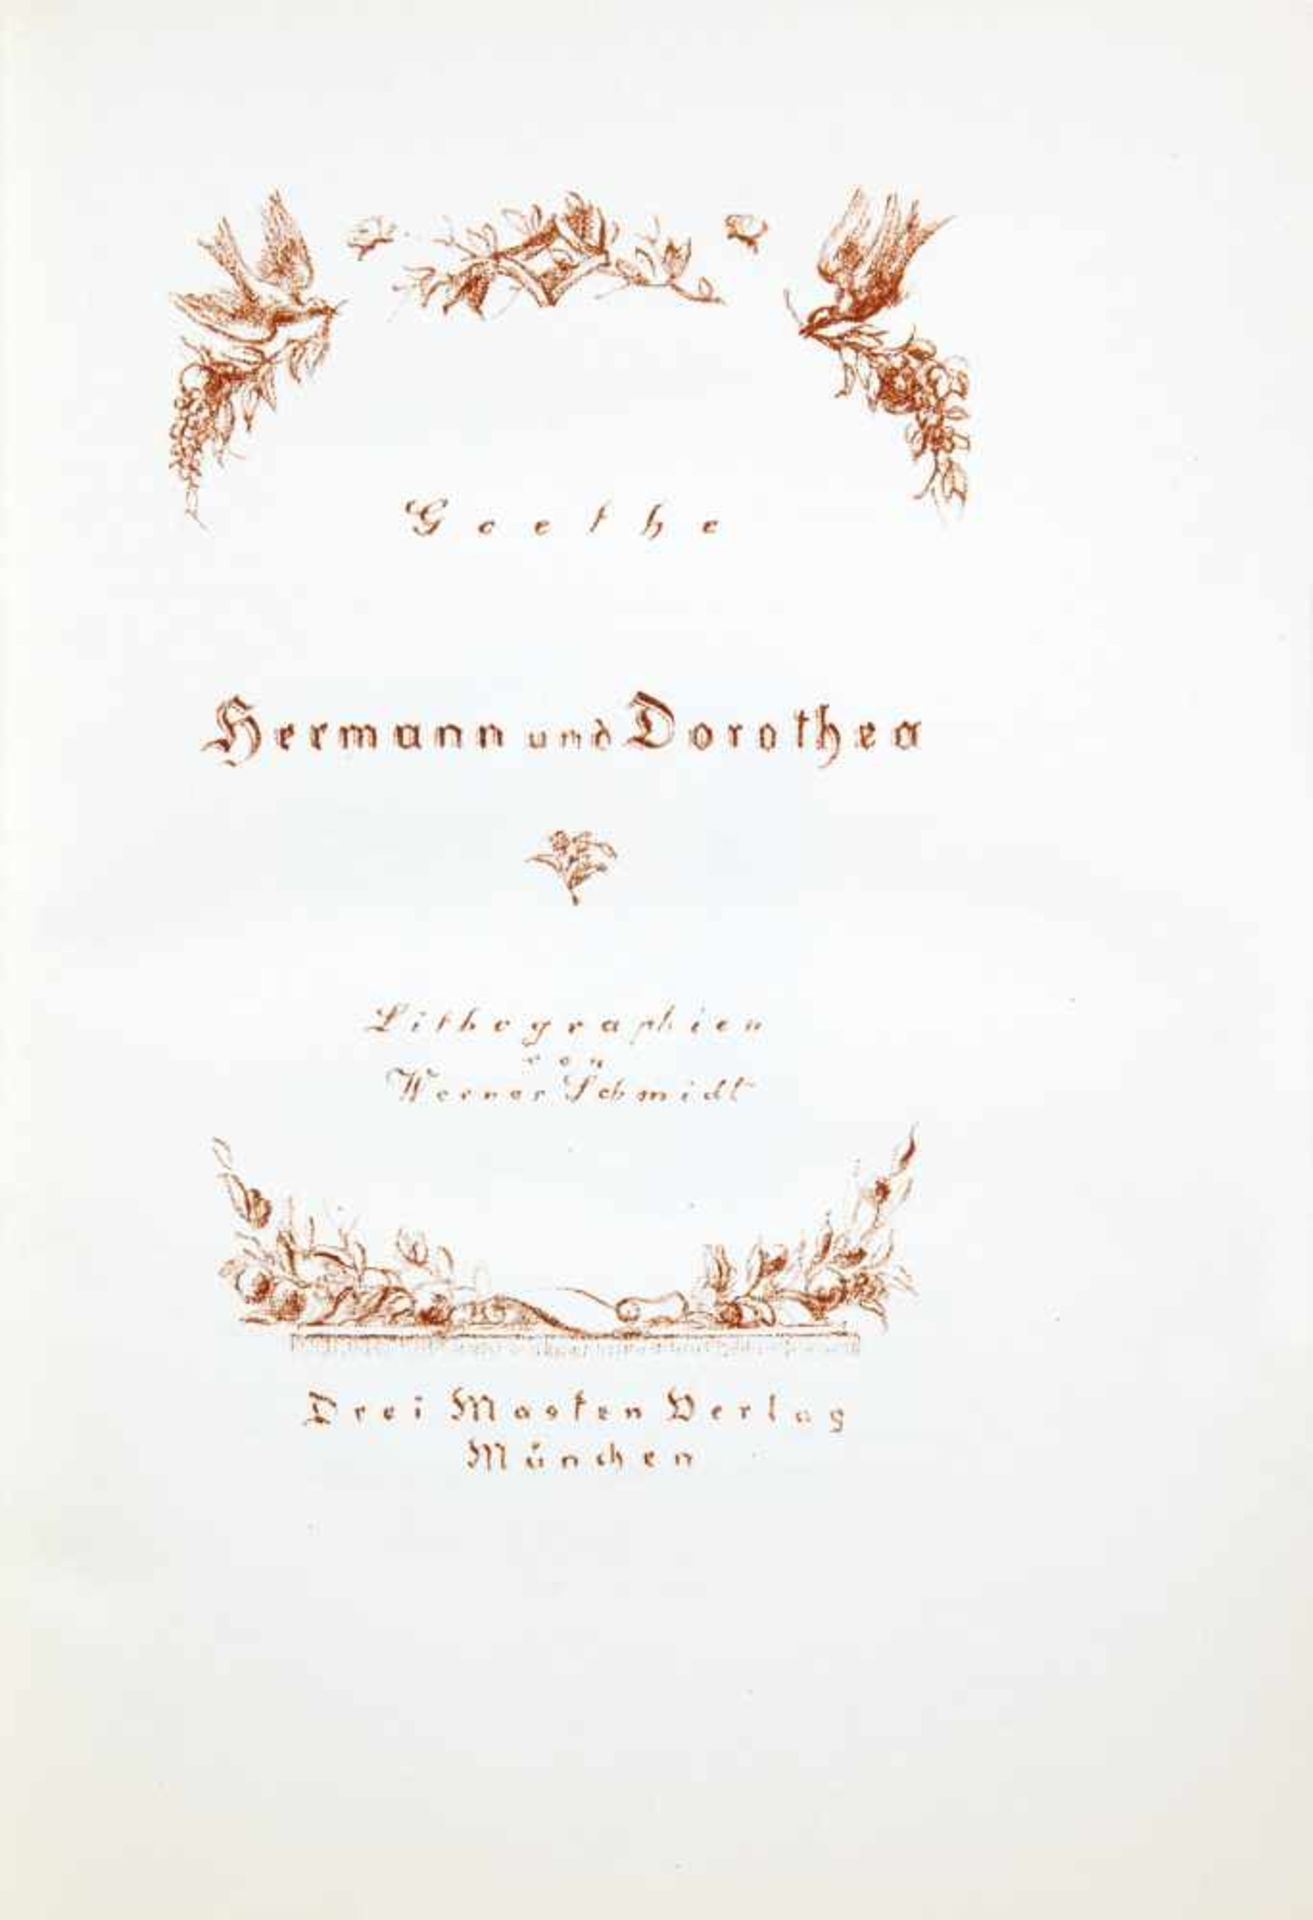 Obelisk-Drucke - Zwei Drucke der Reihe. München, Drei Masken Verlag 1923. Mit zahlreichen - Image 3 of 3